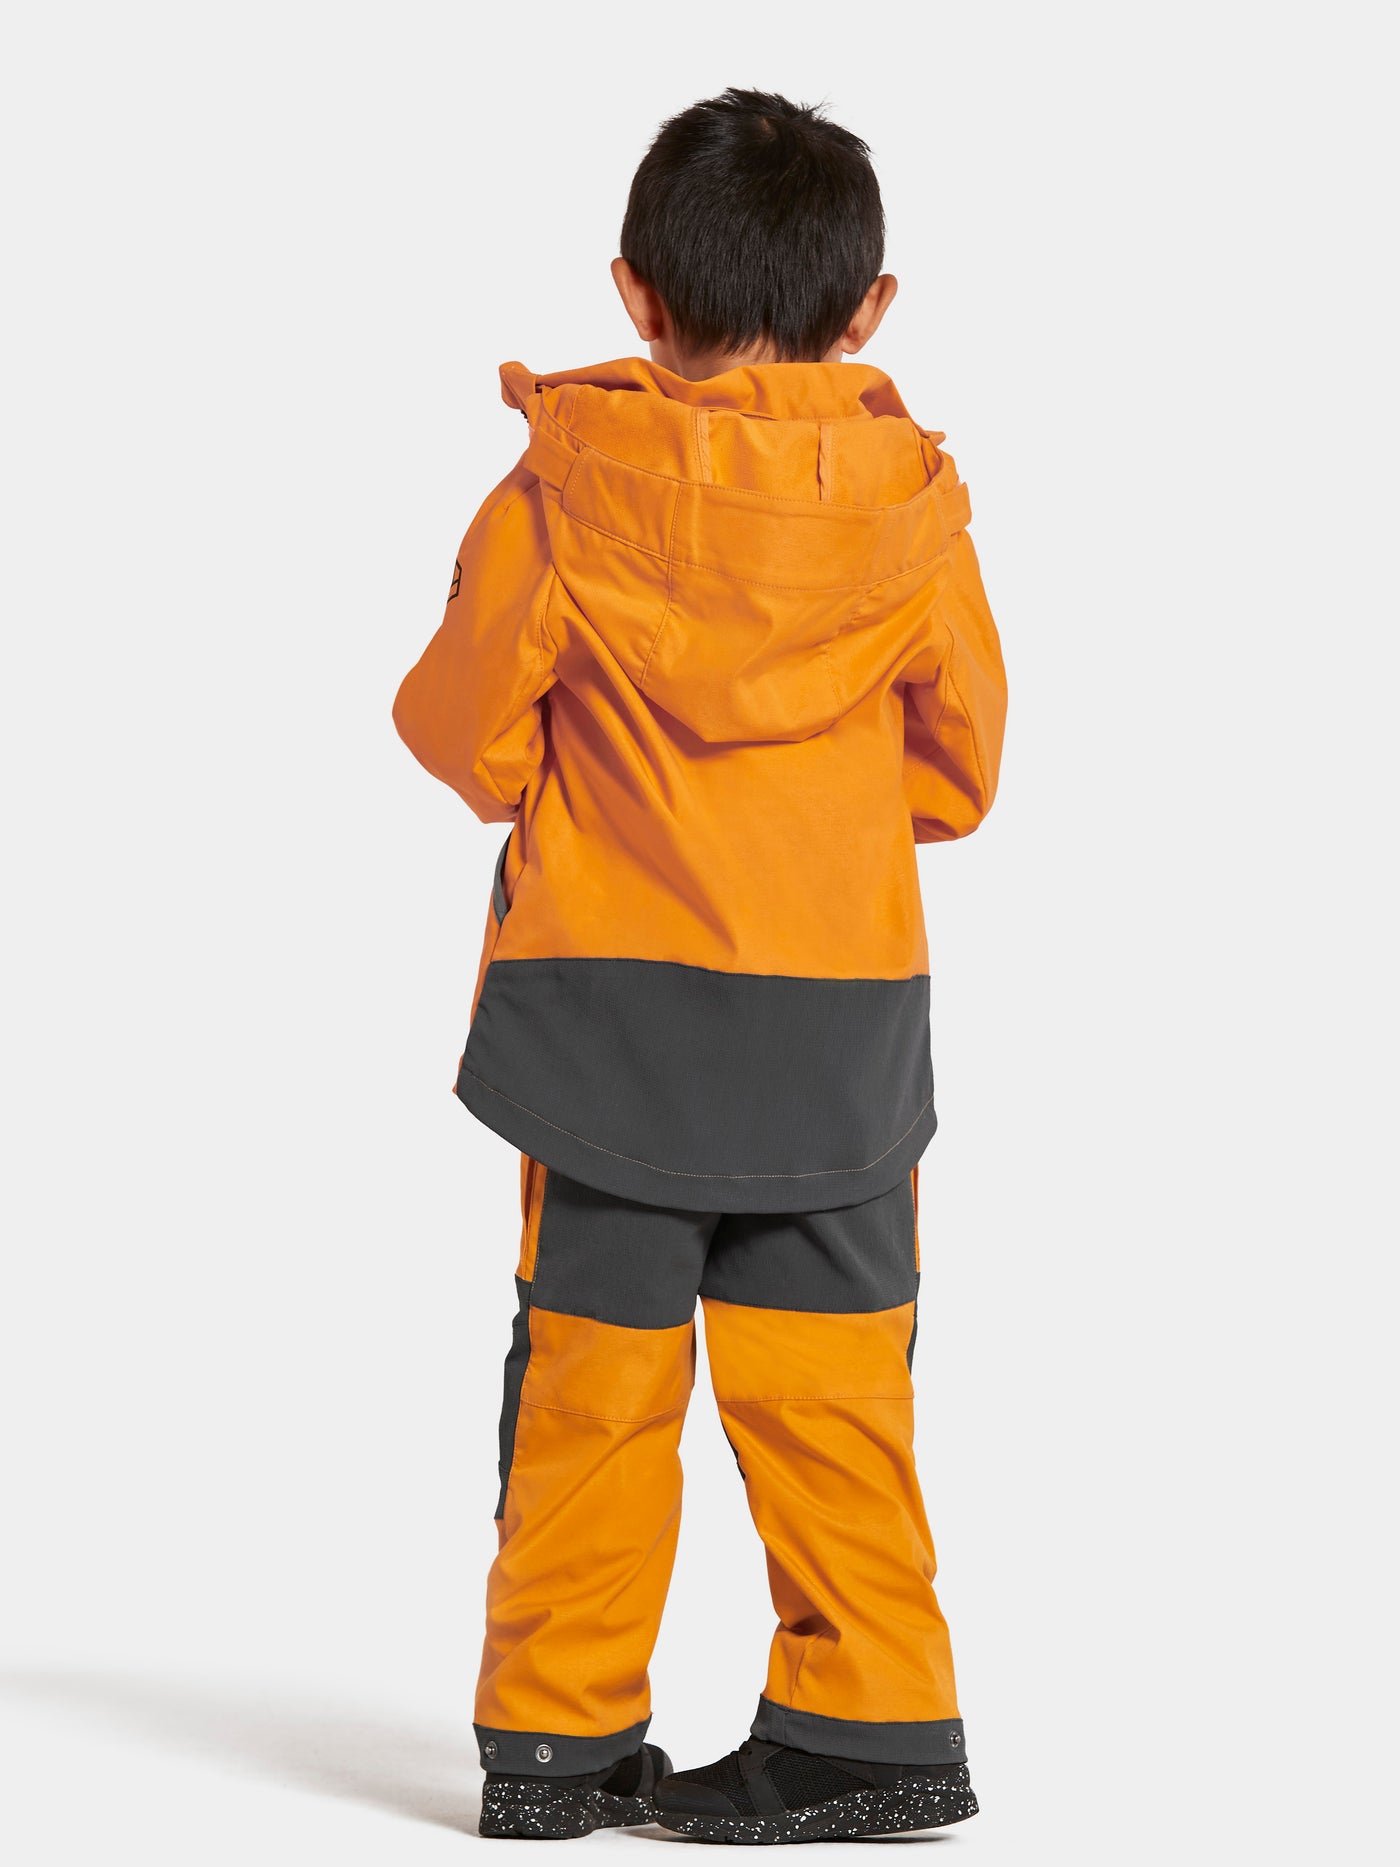 Pojan päällä Didriksonsin Stigen Lasten keltainen takki takaa kuvattuna